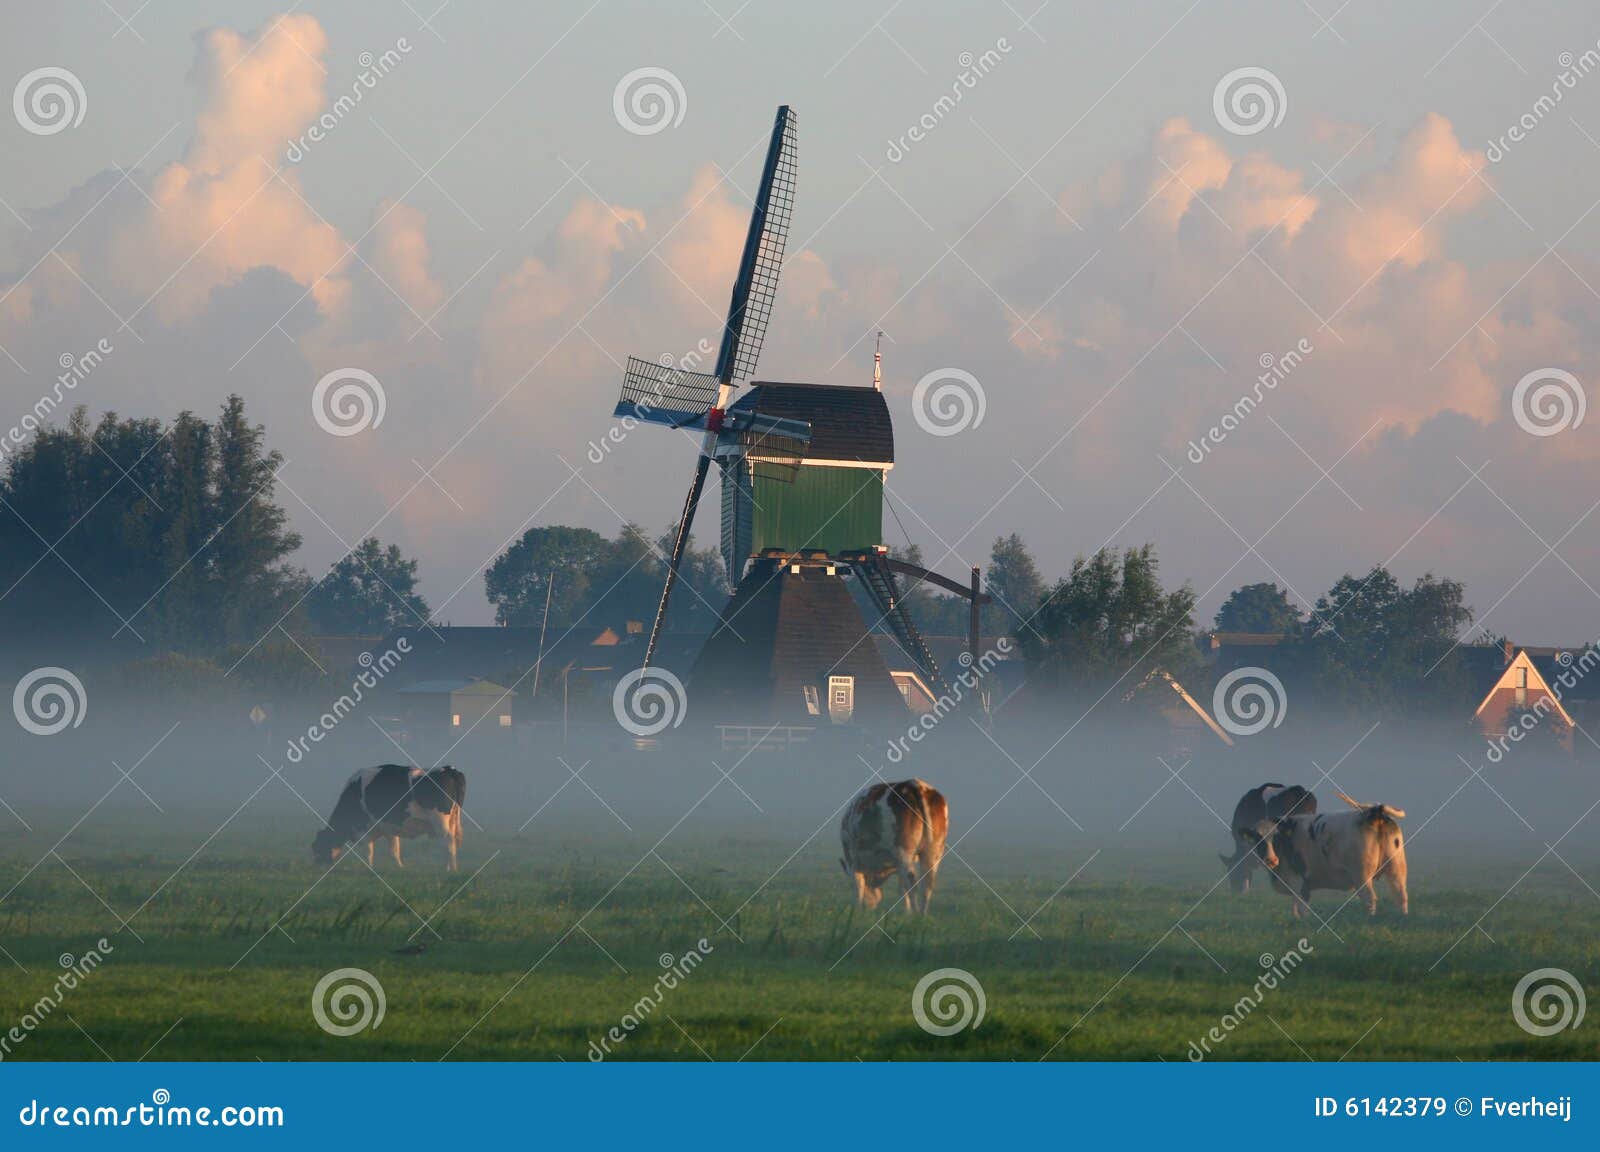 dutch cows in morning fog